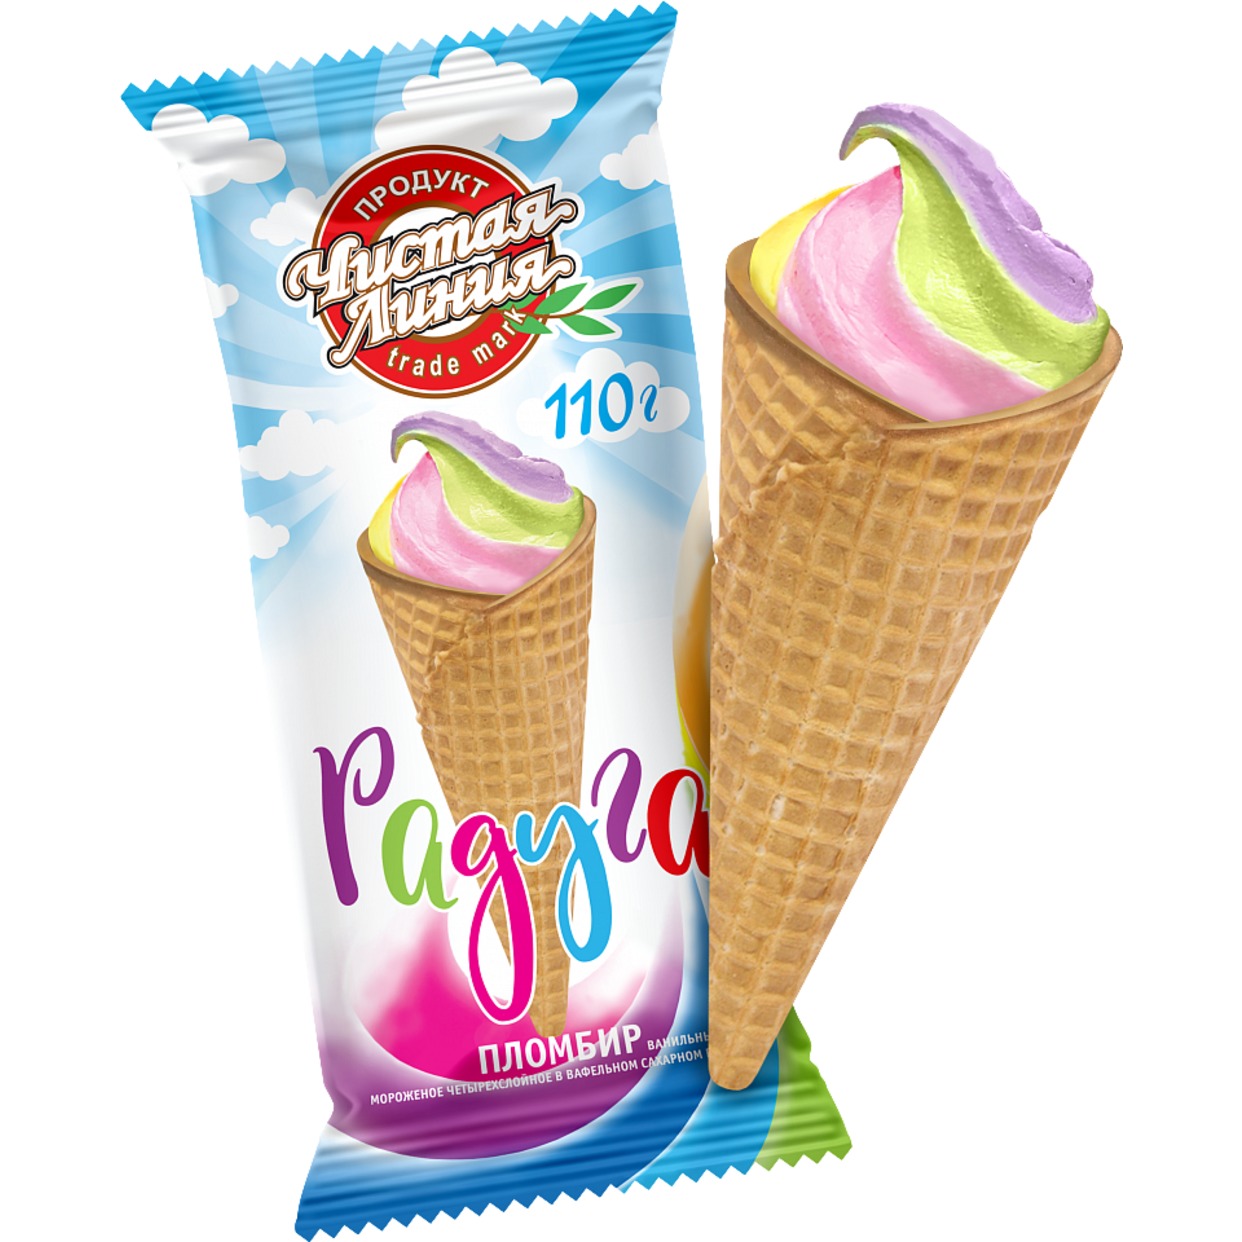 Мороженое четырехслойное пломбир ванильный "Радуга" в вафельном сахарном рожке МДЖ 12% 110г по акции в Пятерочке